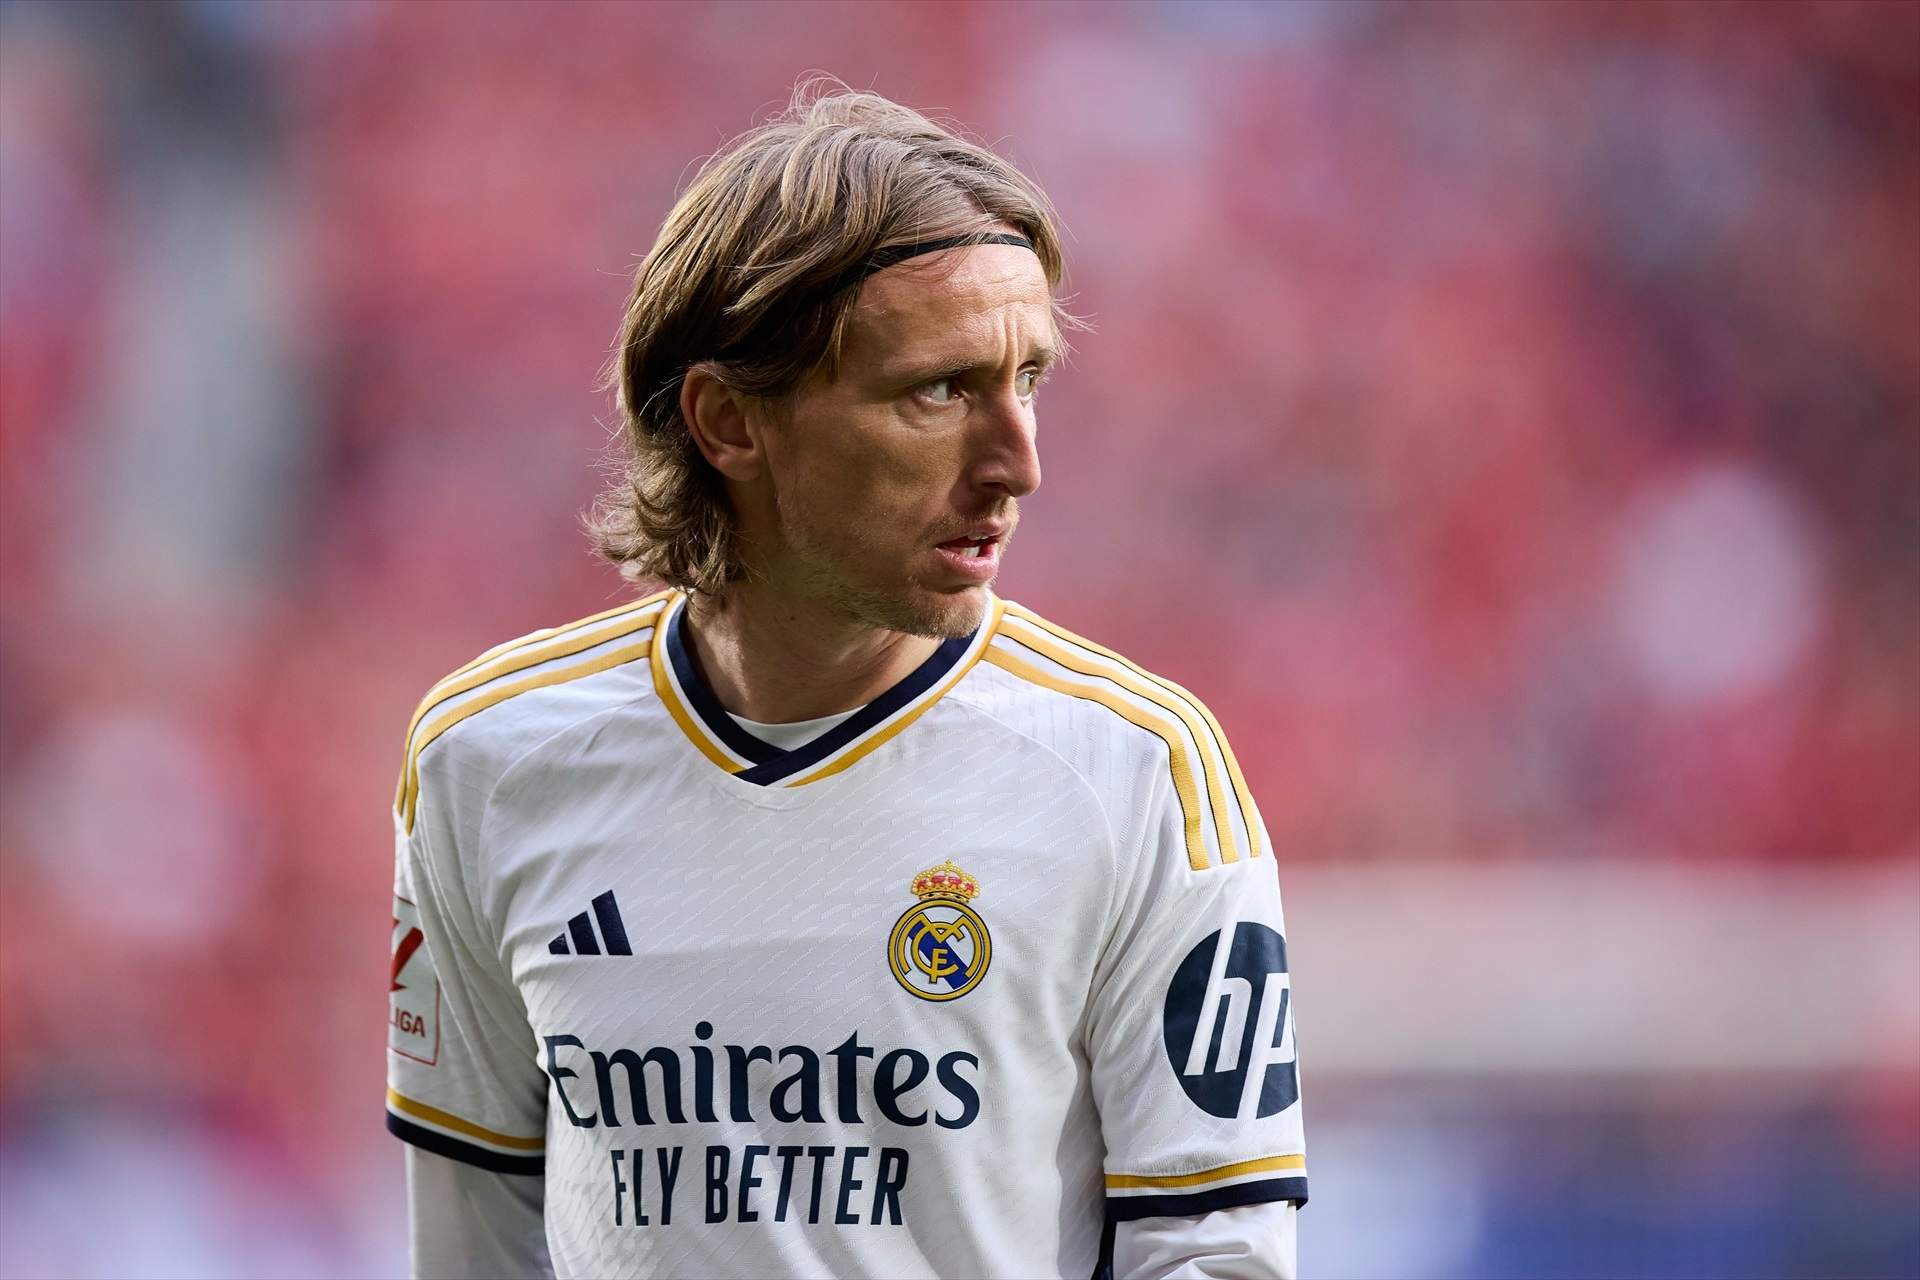 Caviar del bueno para sustituir a Luka Modrić en el Real Madrid, en Inglaterra lo comparan con Phil Foden